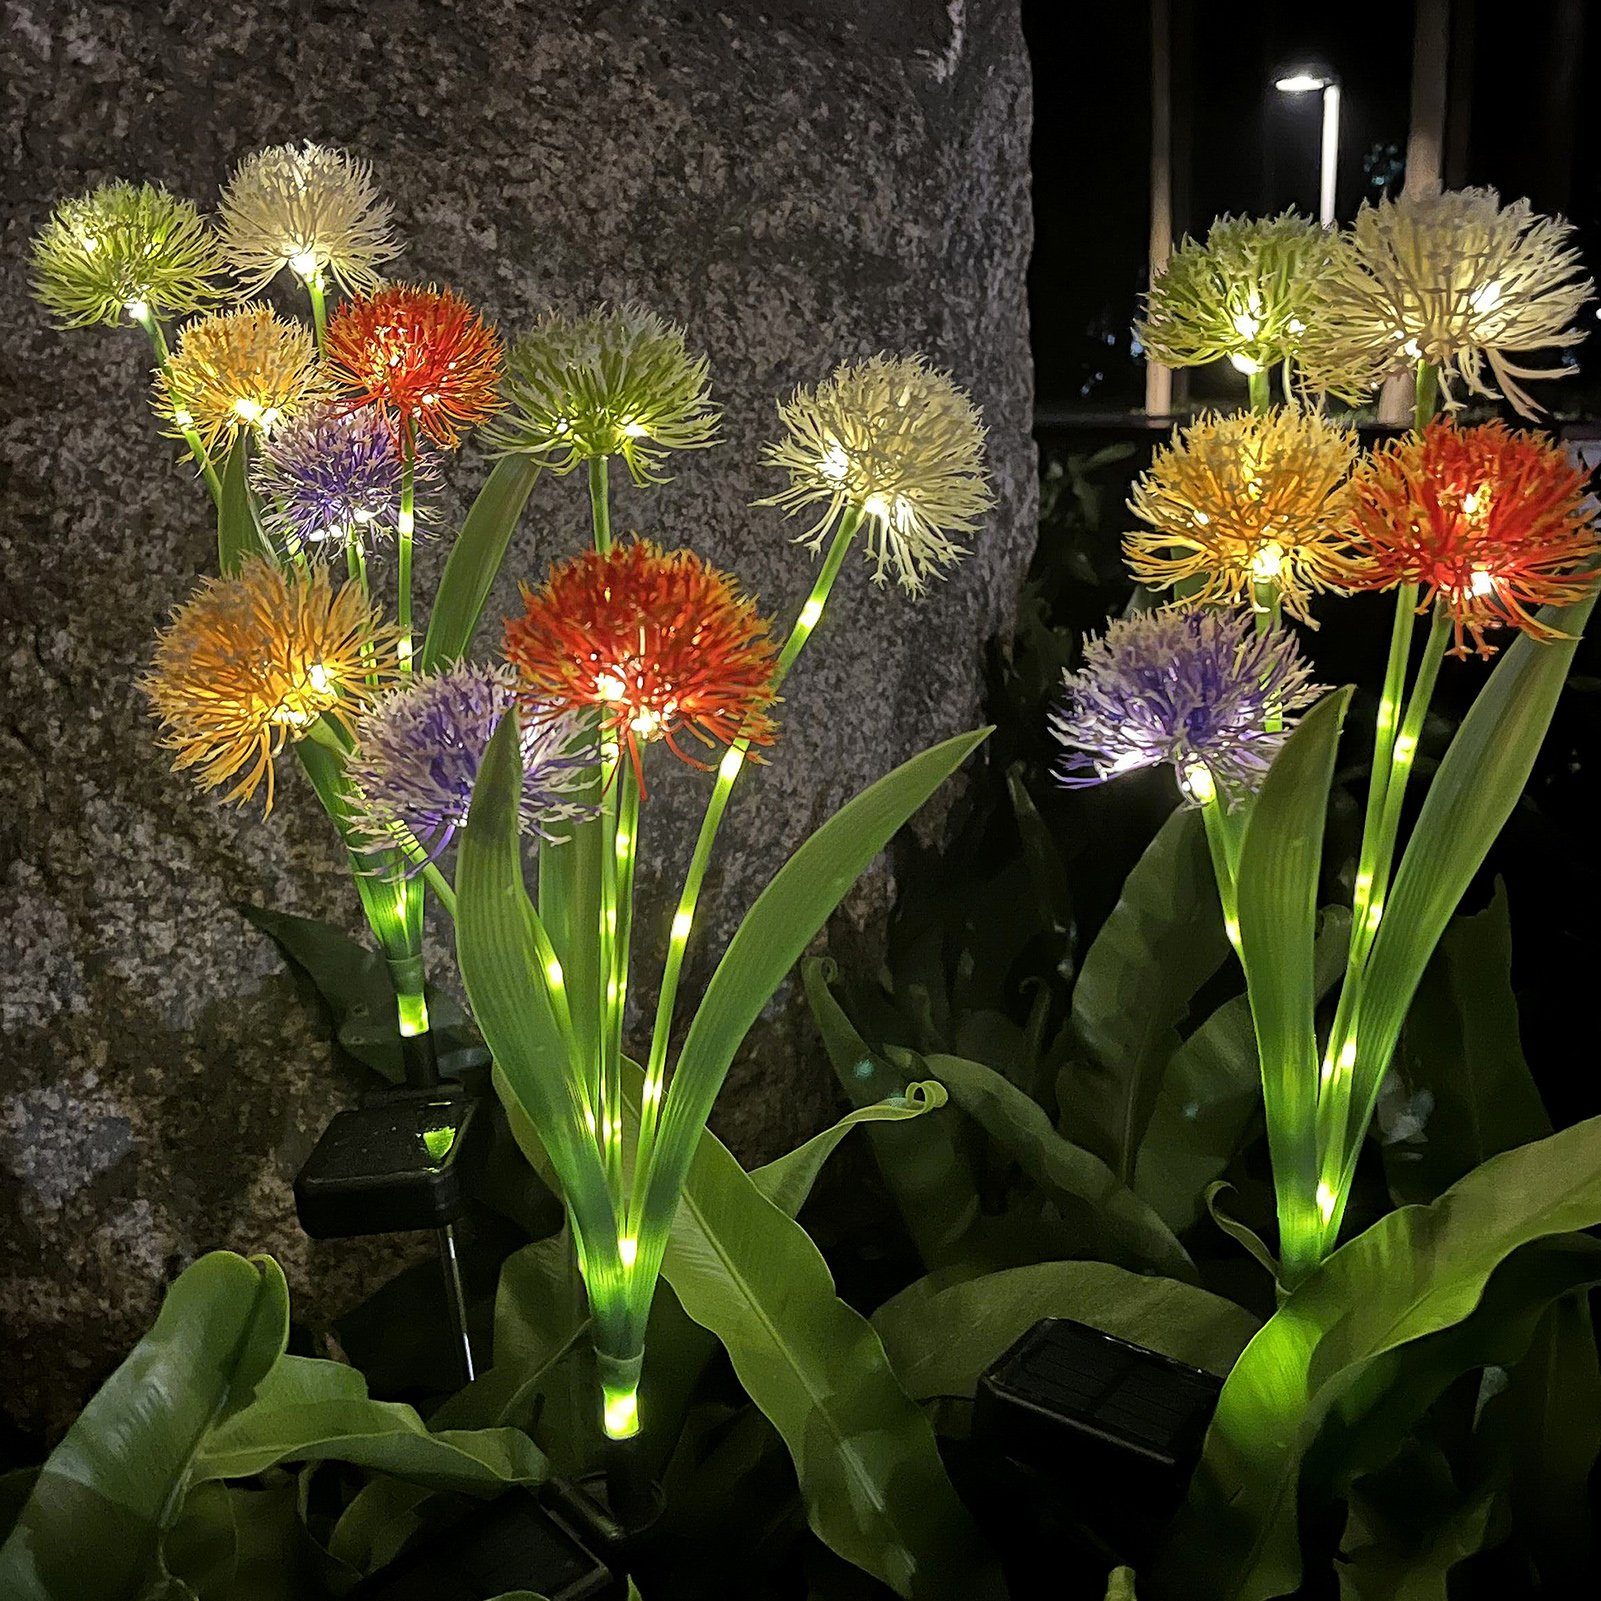 Rutaqian Gartenleuchte Gartenleuchten Wasserdicht 5 Glühbirnen Blütenform Sonnenlicht, Landschaftsbau, energiesparende Gartendekoration, Gartenleuchten, Dekorative farbenfrohe Außenlampen mit warmem Licht, Garten Beleuchtungszubehör für Garten Rasen Terrasse Deko